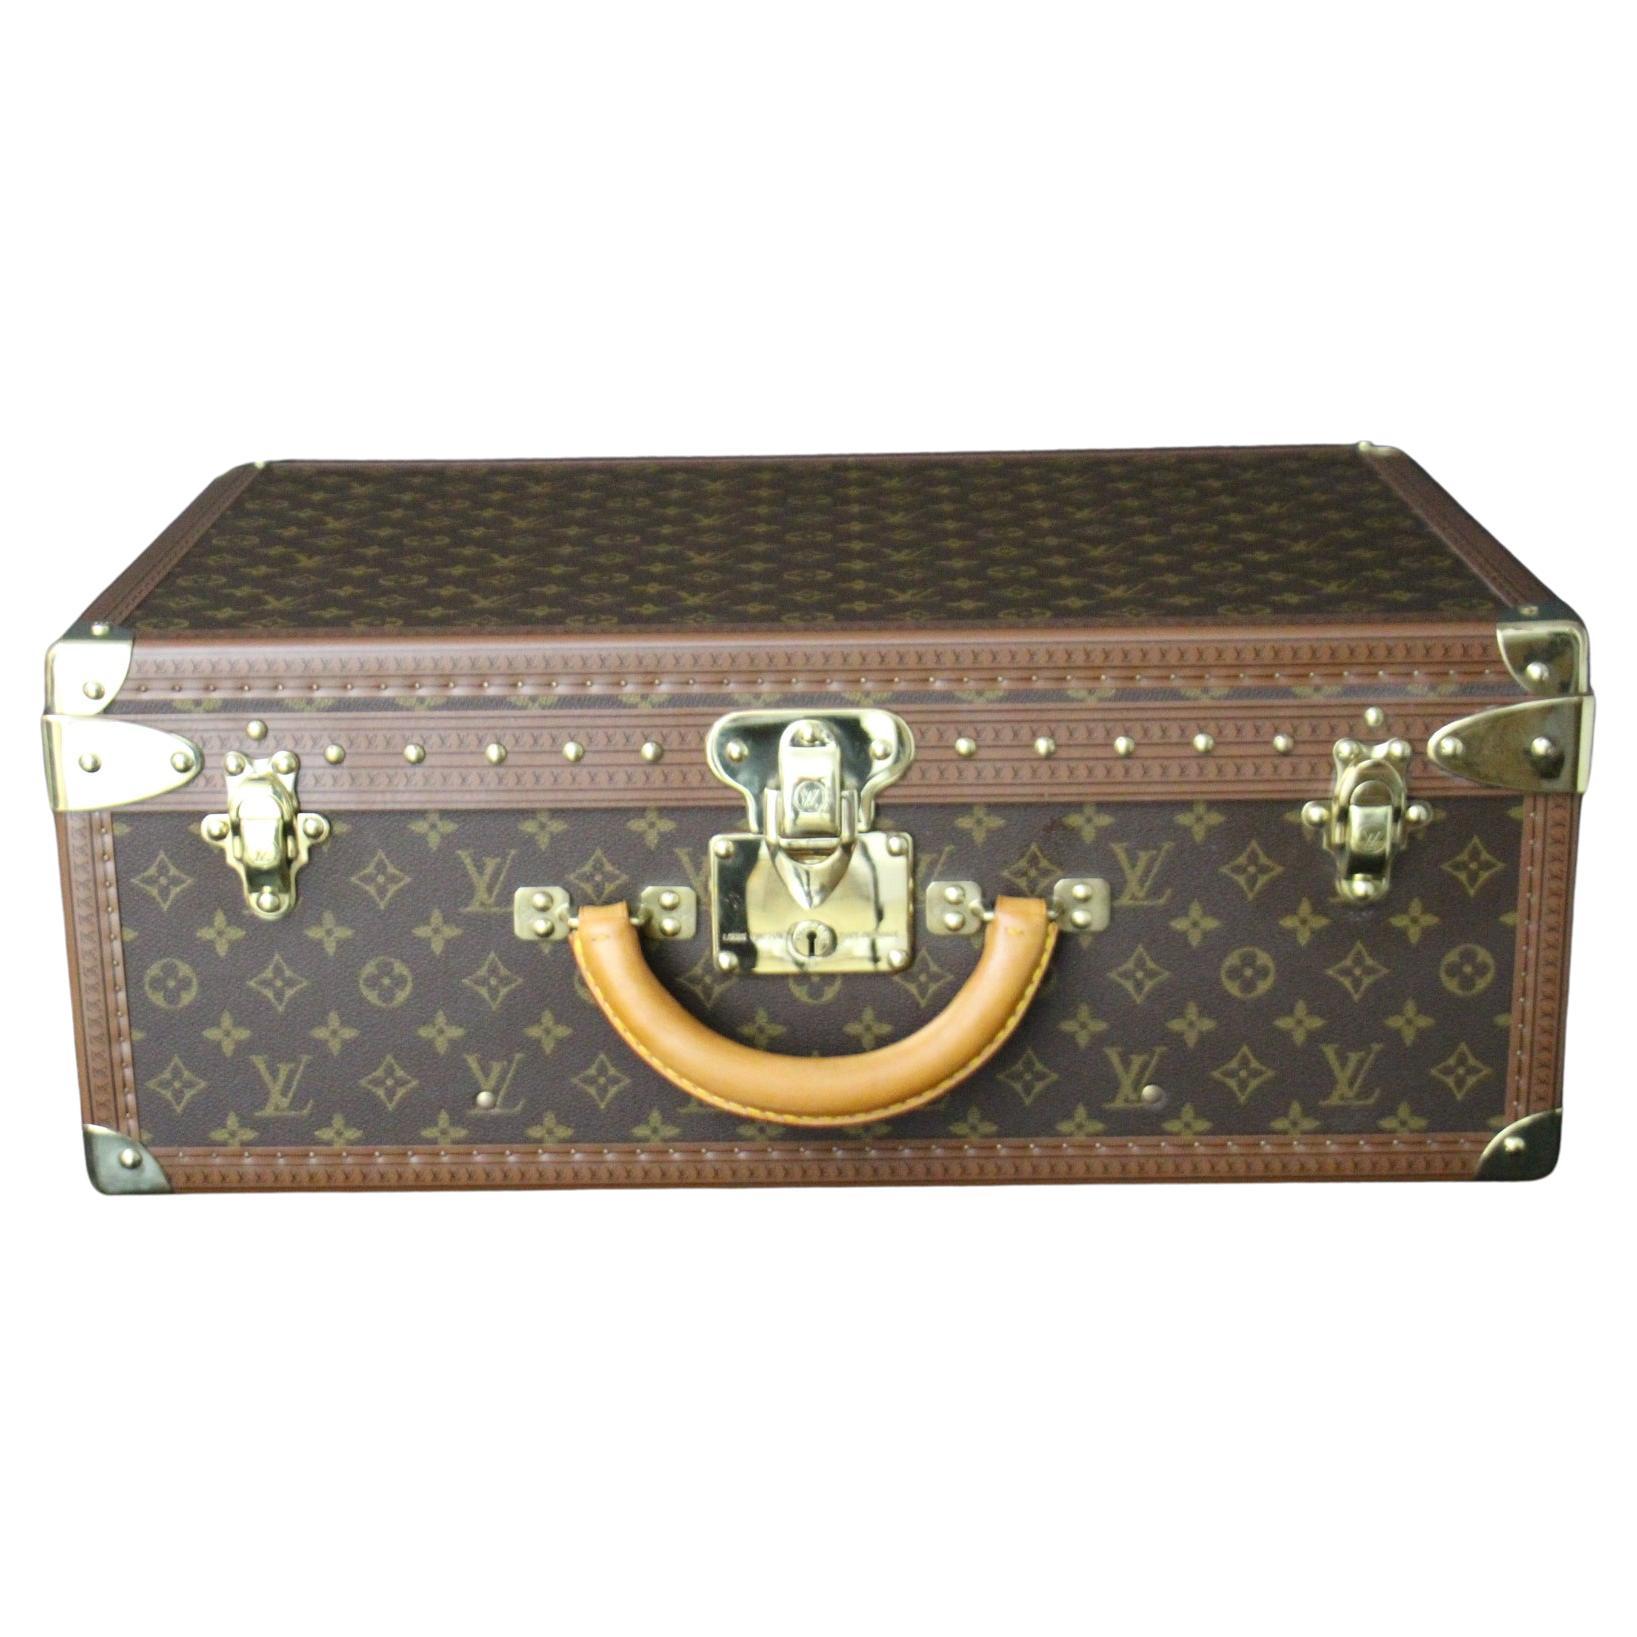  Louis Vuitton Suitcase, 55 Alzer Louis Vuitton Suitcase, 55 cm Vuitton Suitcase